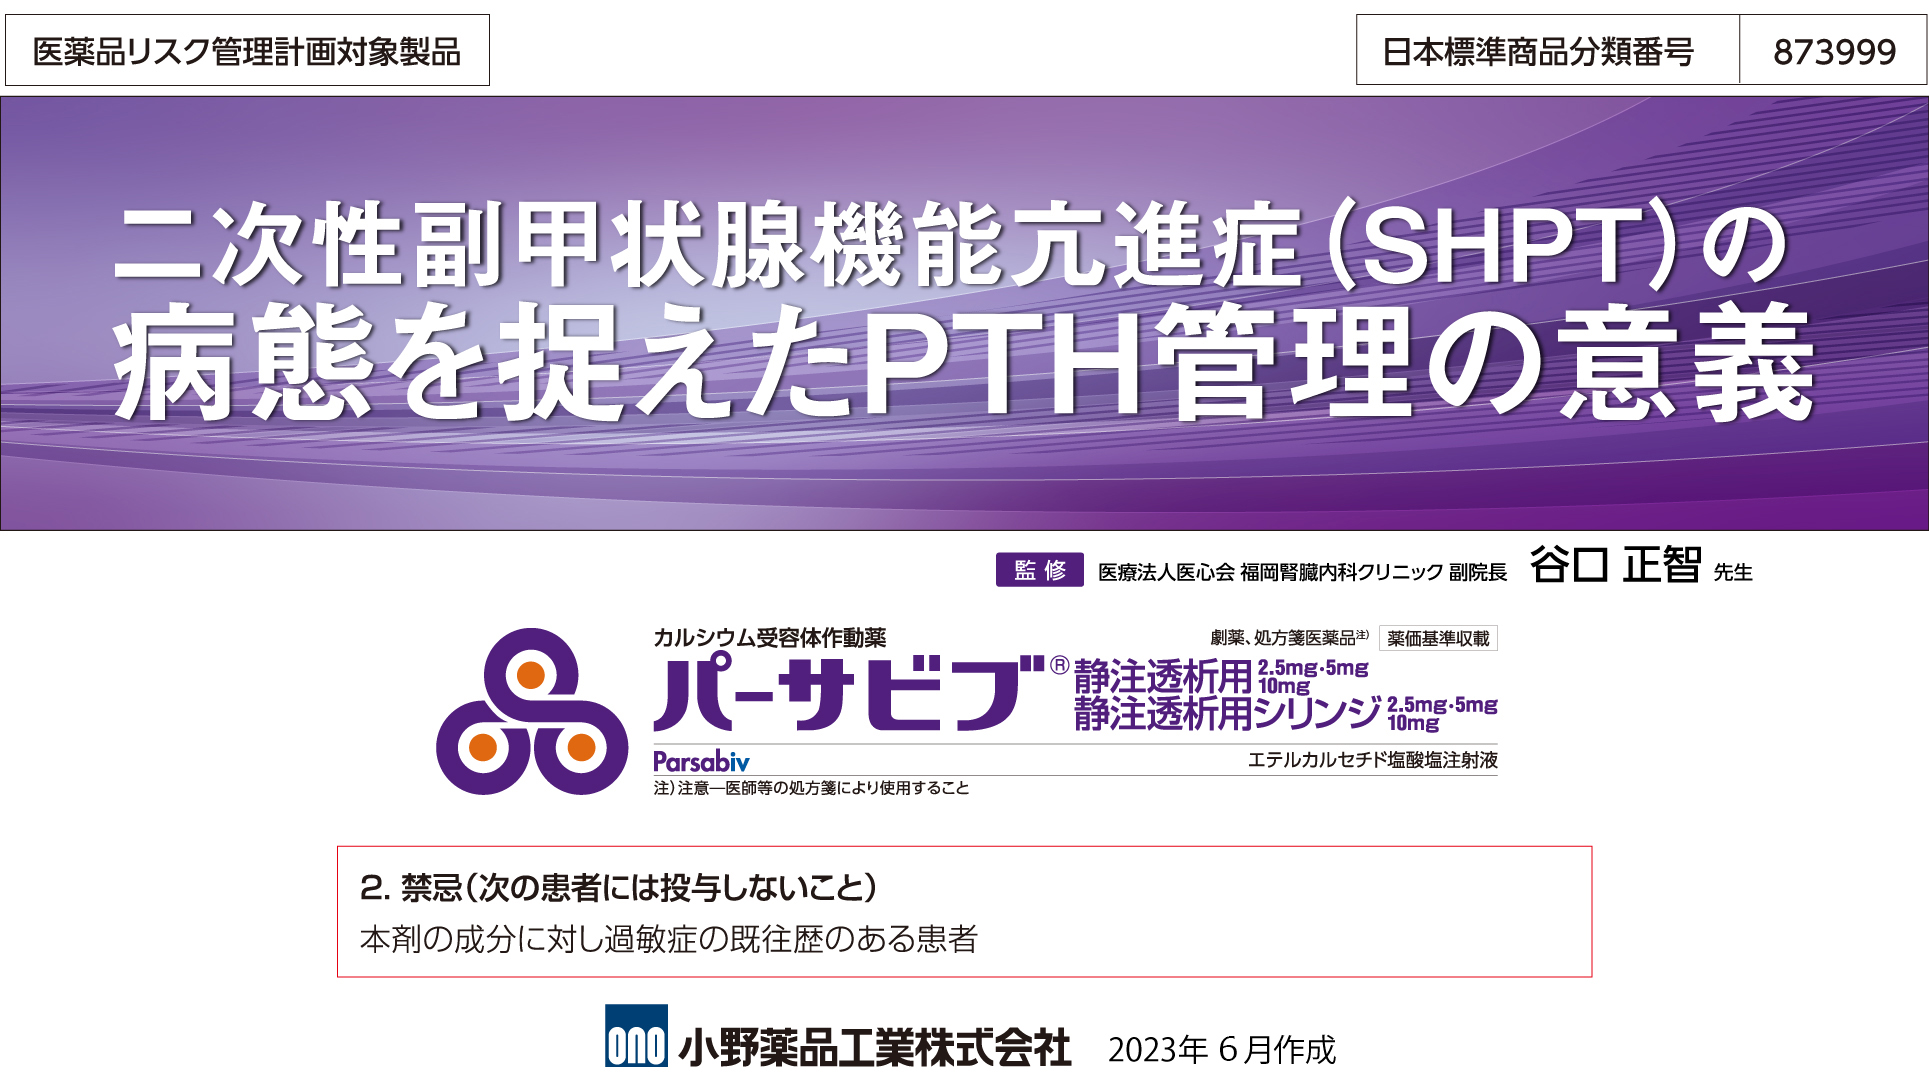 二次性副甲状腺機能亢進症(SHPT)の病態を捉えたPTH管理の意義